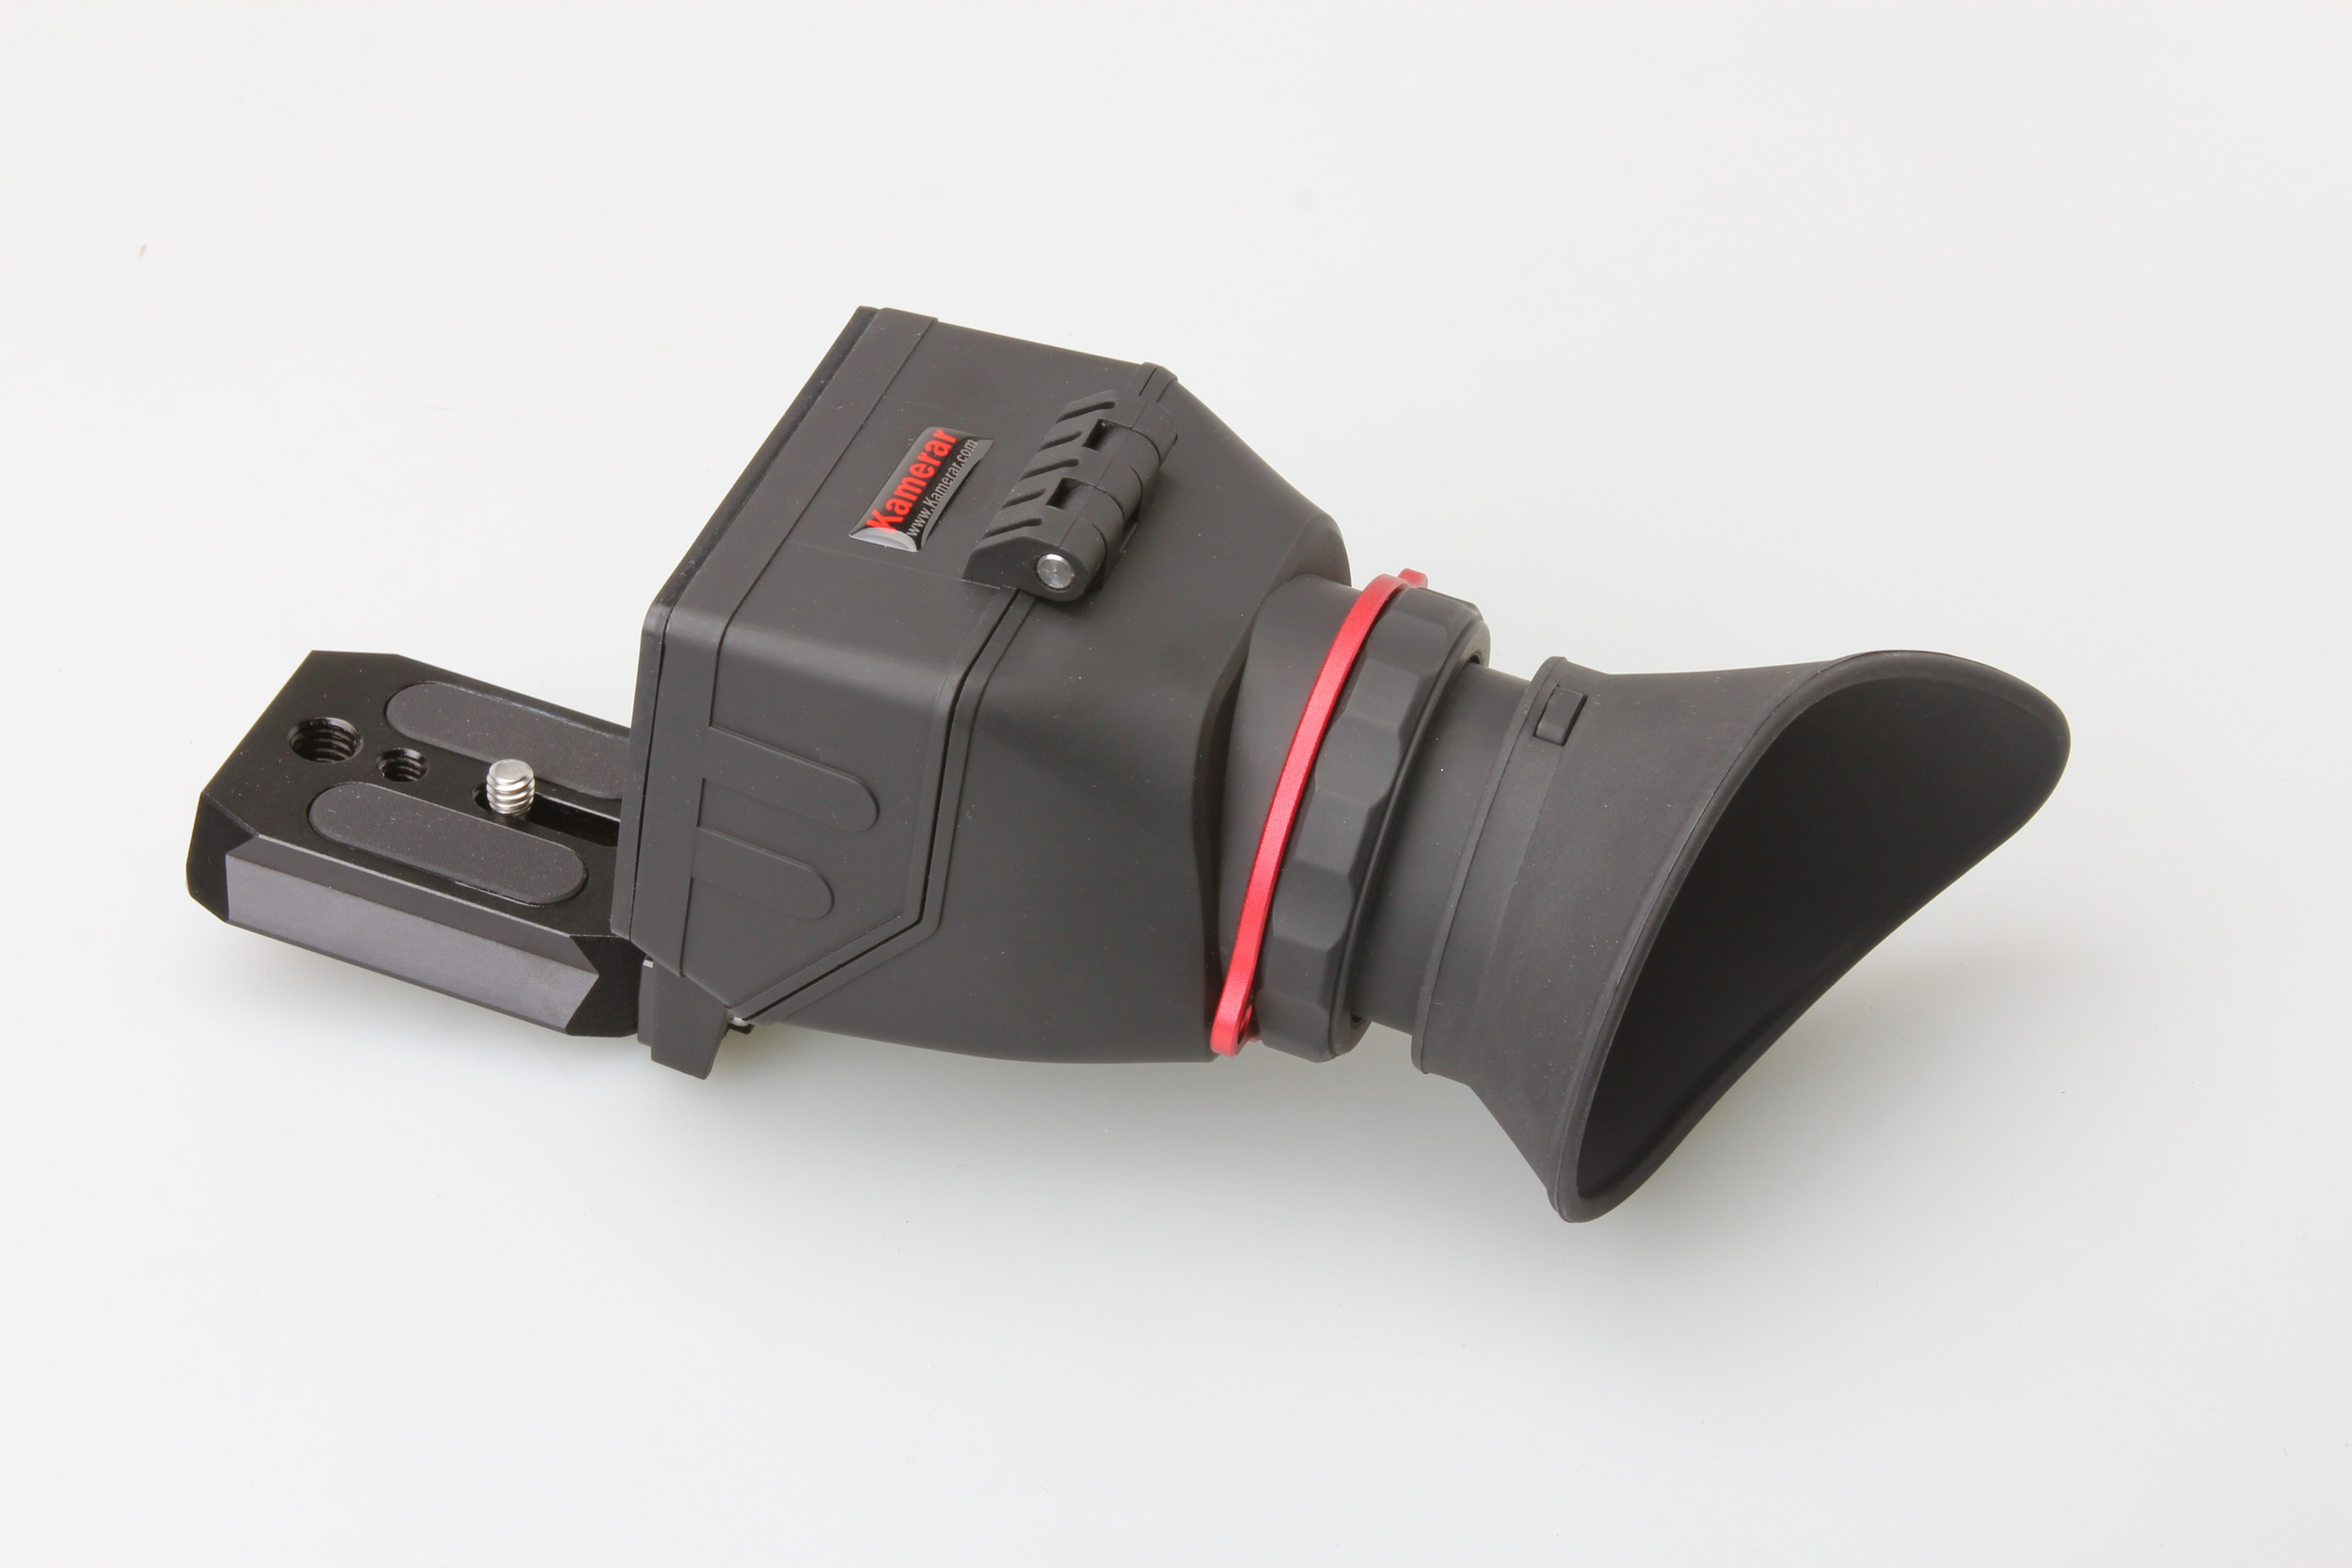 Kamerar SLD-470 47" Mark II DSLR Video Camera Slider Track Stabilizer System 